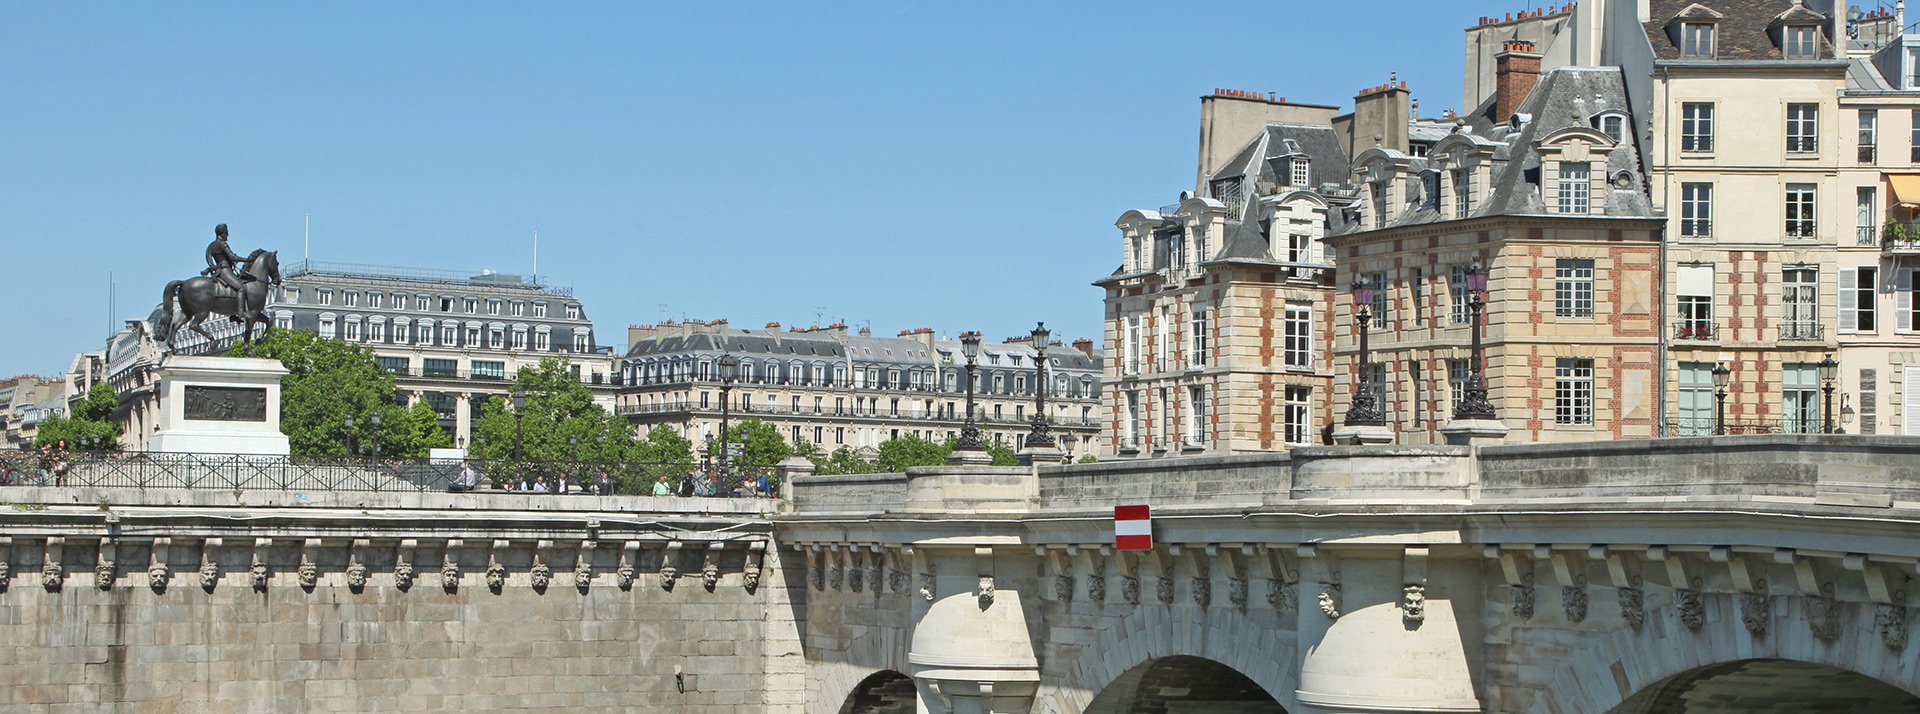 La Petitie Dauphine, location in the center of Paris